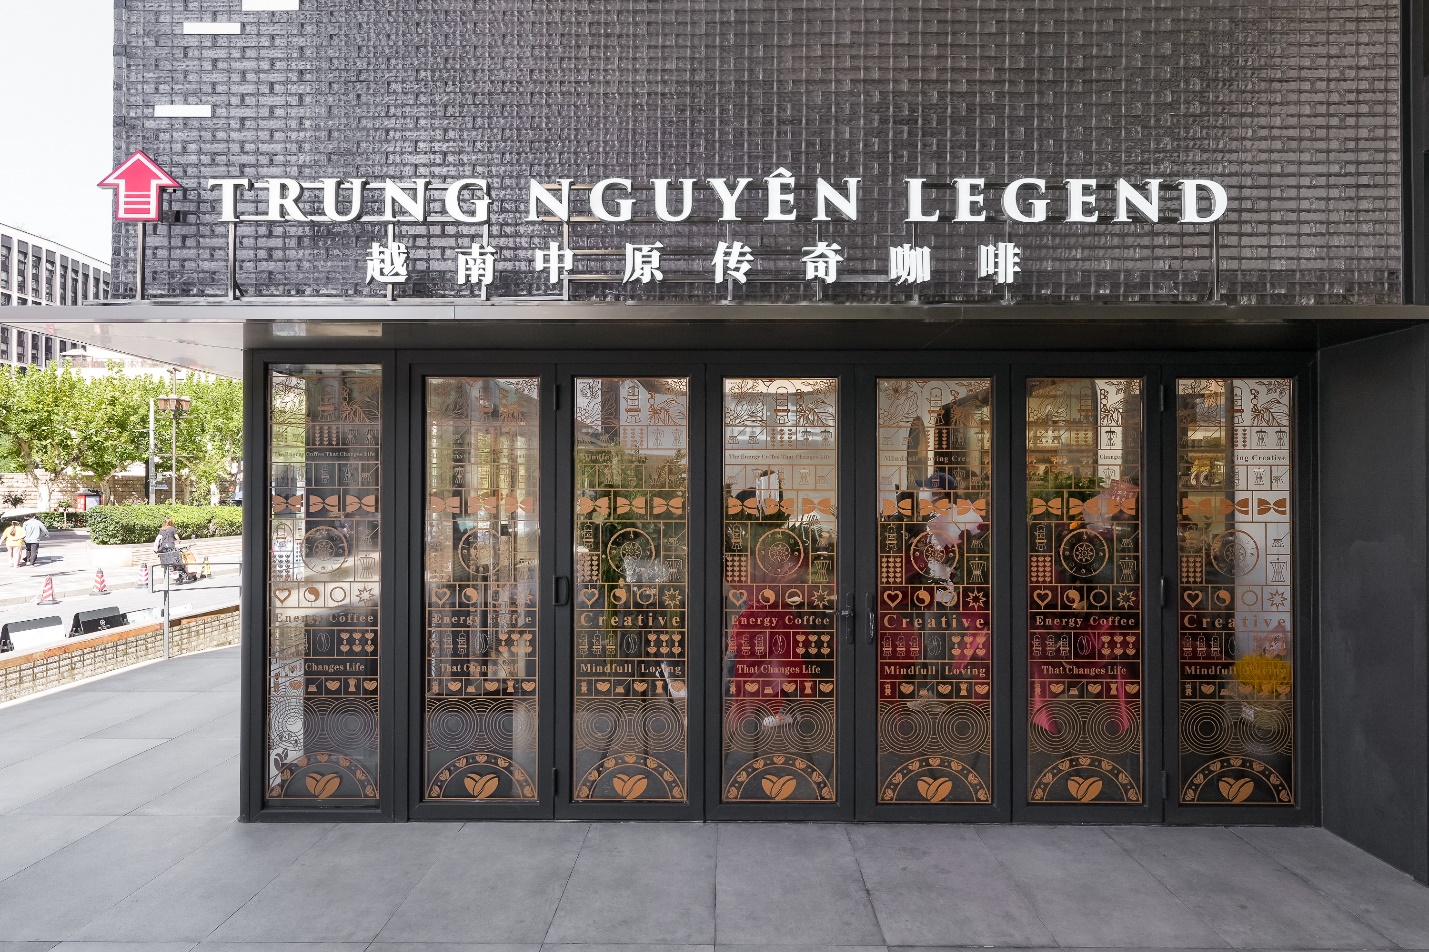 Sức hút thế giới cà phê Trung Nguyên Legend đầu tiên tại Thượng Hải, Trung Quốc - Ảnh 2.